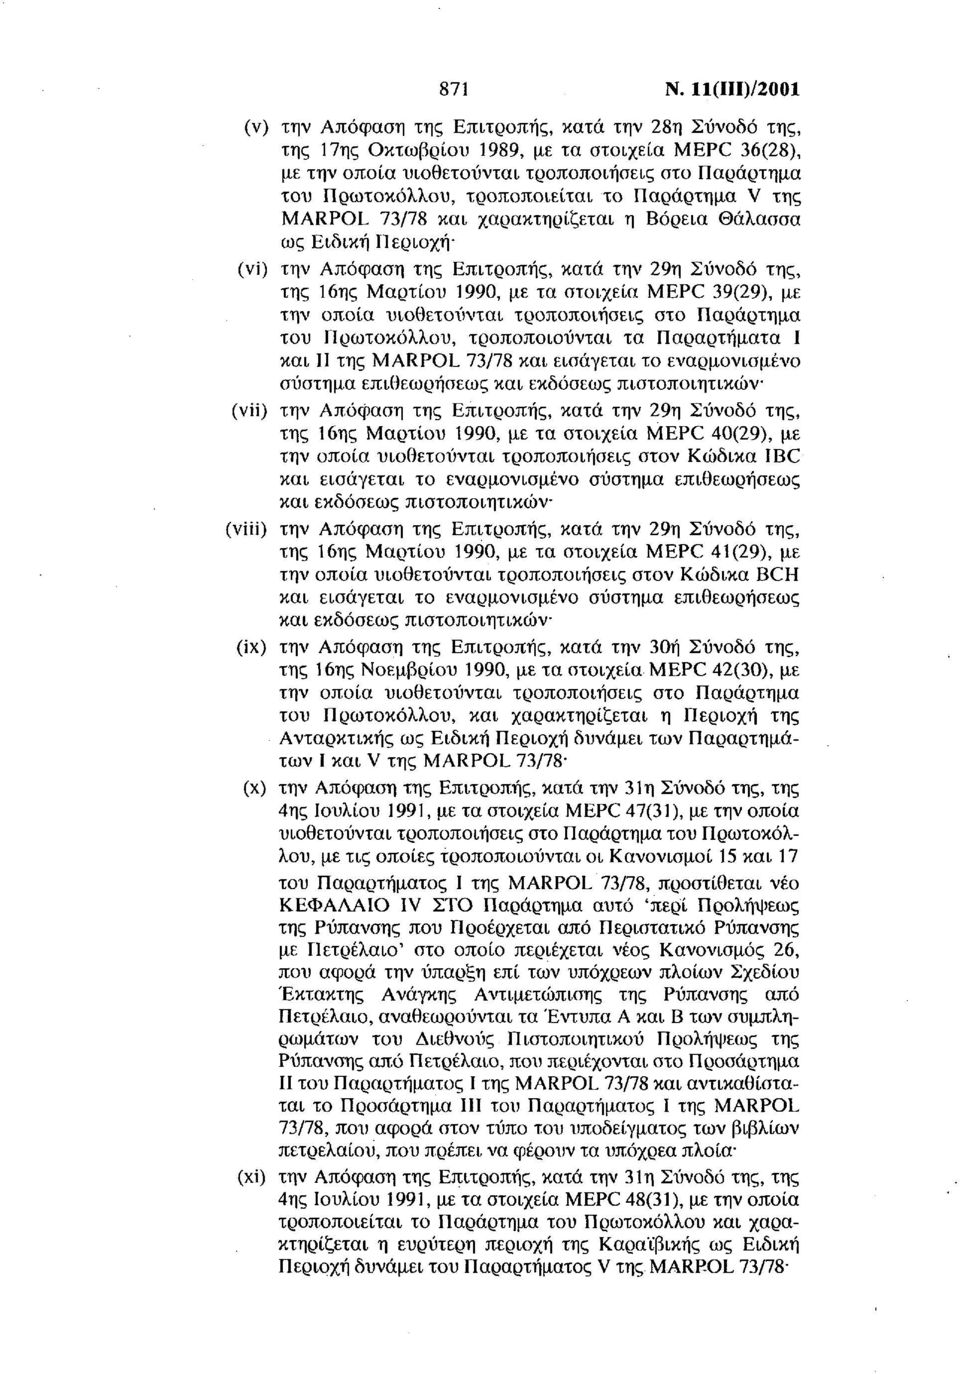 χαρακτηρίζεται η Βόρεια Θάλασσα ως Ειδική Περιοχή (vi) την Απόφαση της Επιτροπής, κατά την 29η Συνοδό της, της 16ης Μαρτίου 1990, με τα στοιχεία MEPC 39(29), με του Πρωτοκόλλου, τροποποιούνται τα